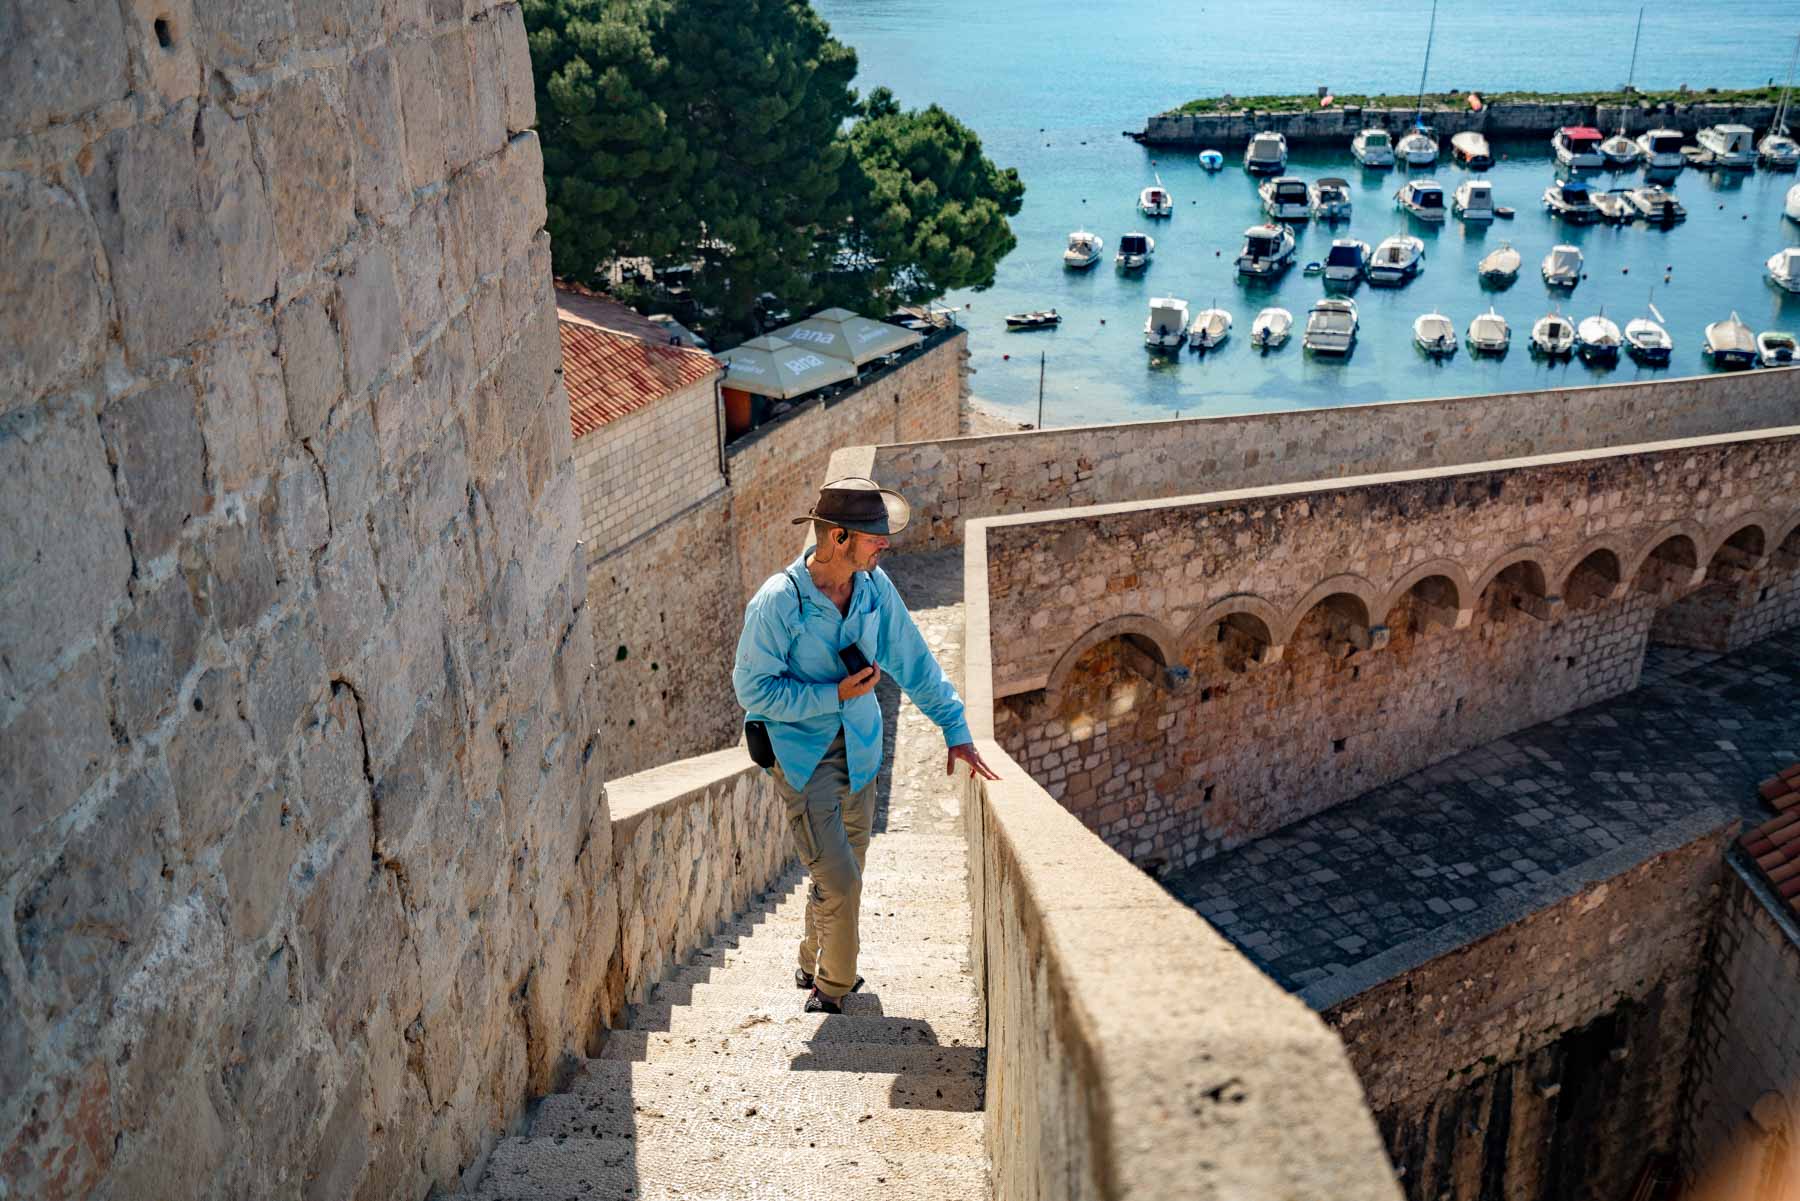 Visiting Dubrovnik Croatia
Walking city walls in Dubrovnik